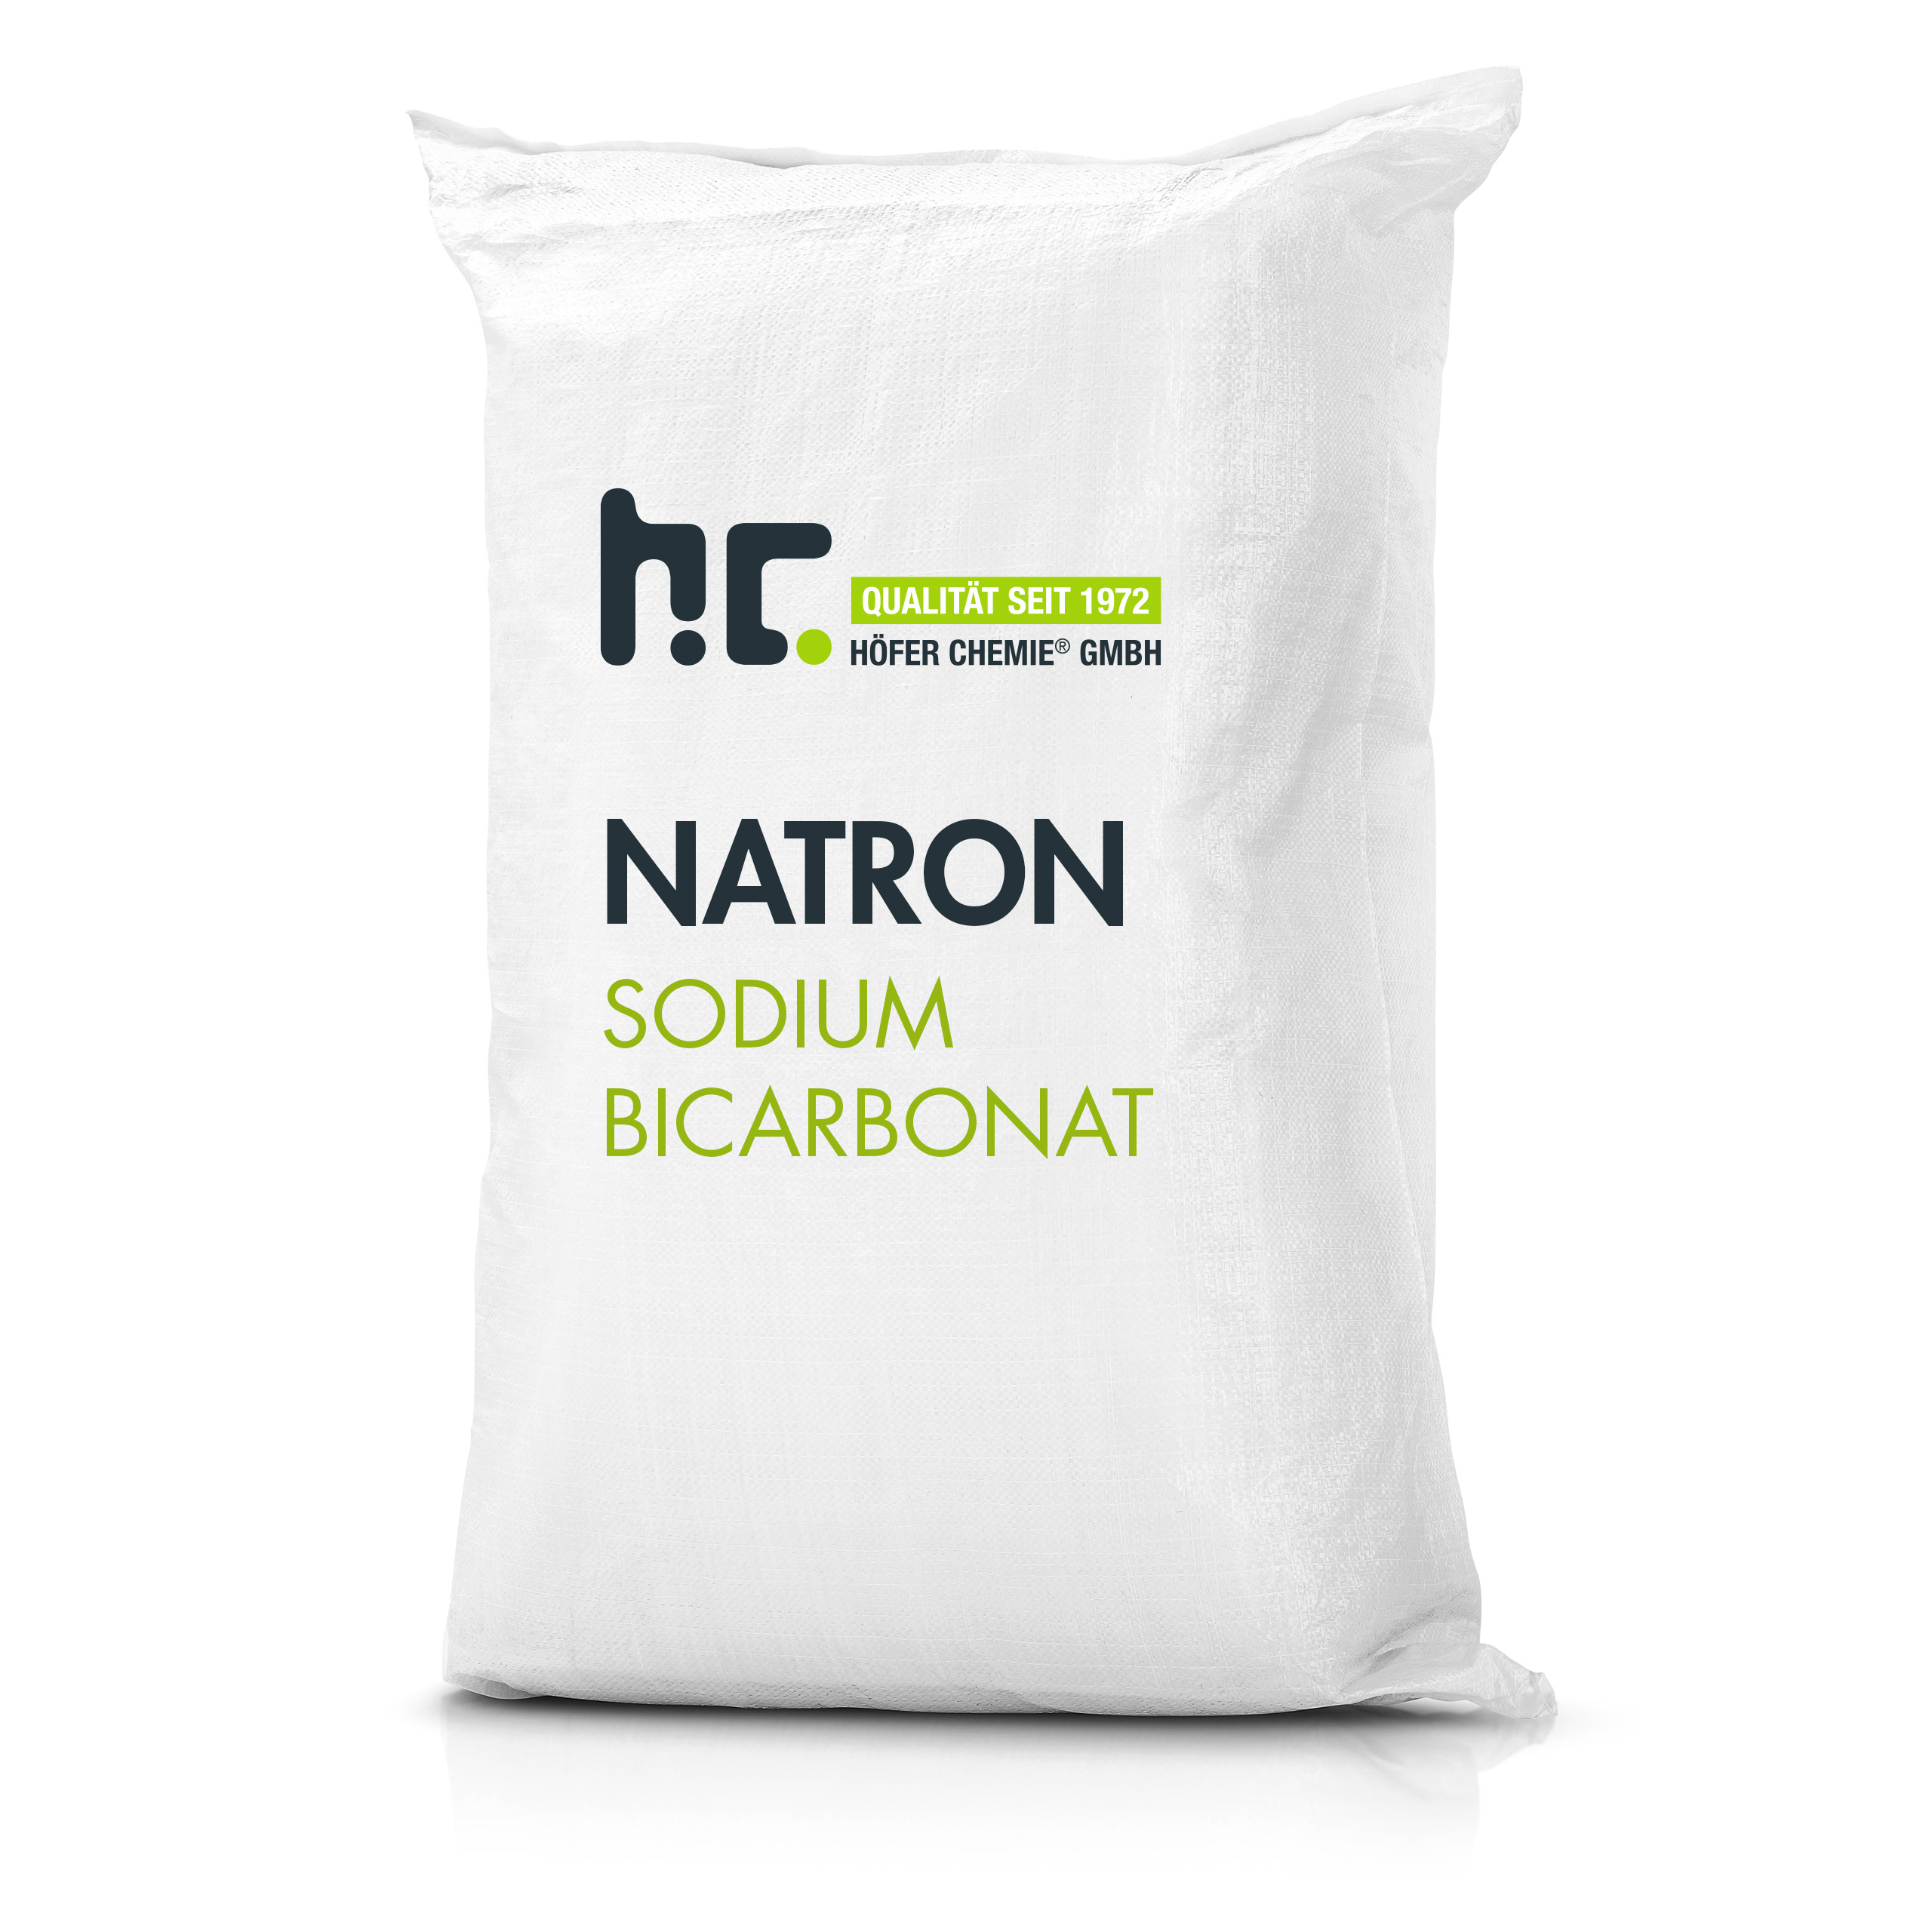 25 kg de bicarbonate de sodium en qualité alimentaire - l'aide ménagère parfaite